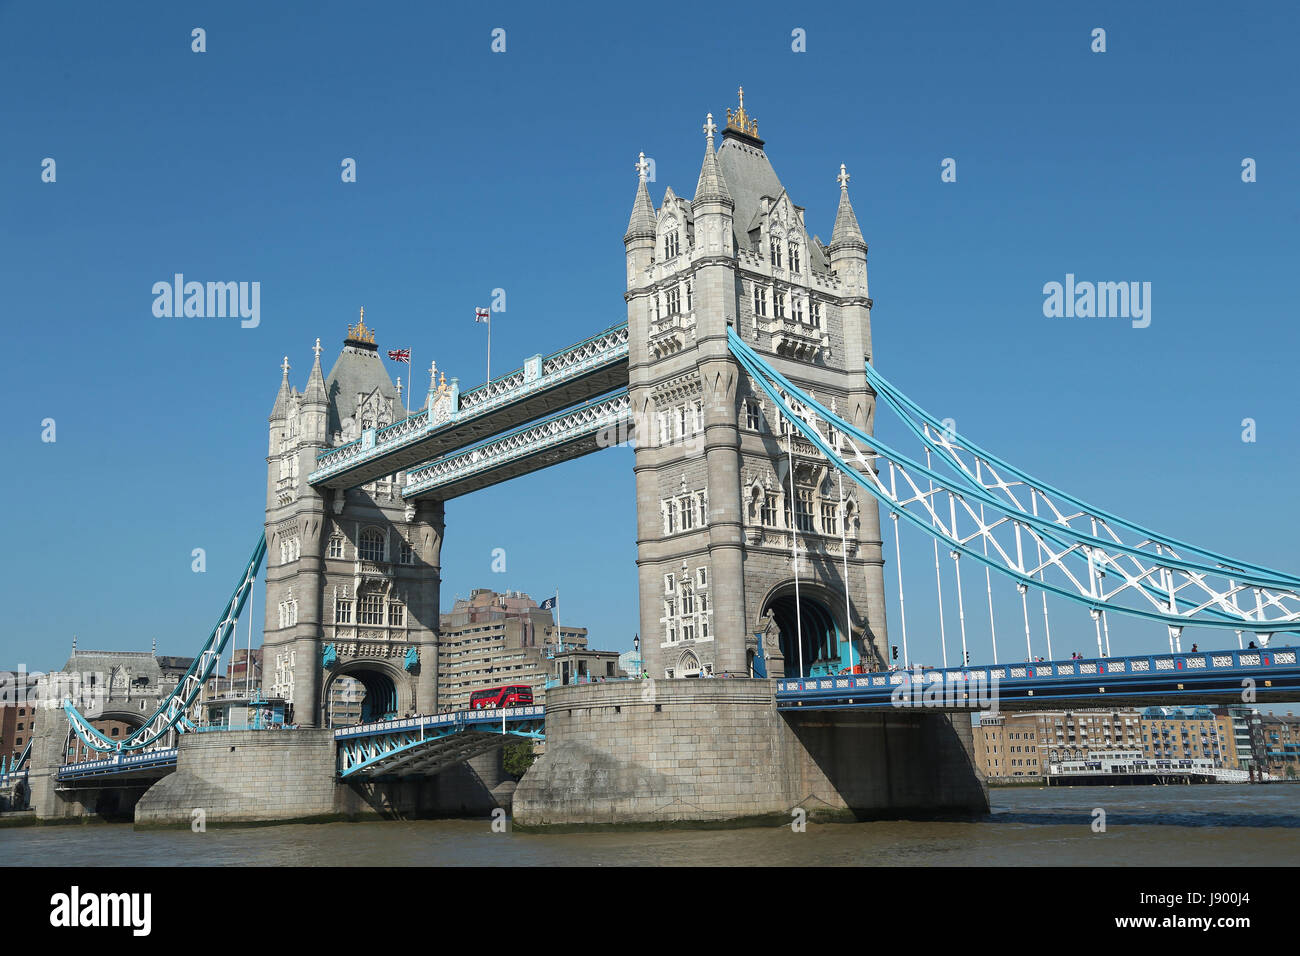 Die berühmte Tower Bridge in London, eines der berühmtesten Gebäude in der Welt, die vor über 120 Jahren gebaut wurde. Stockfoto